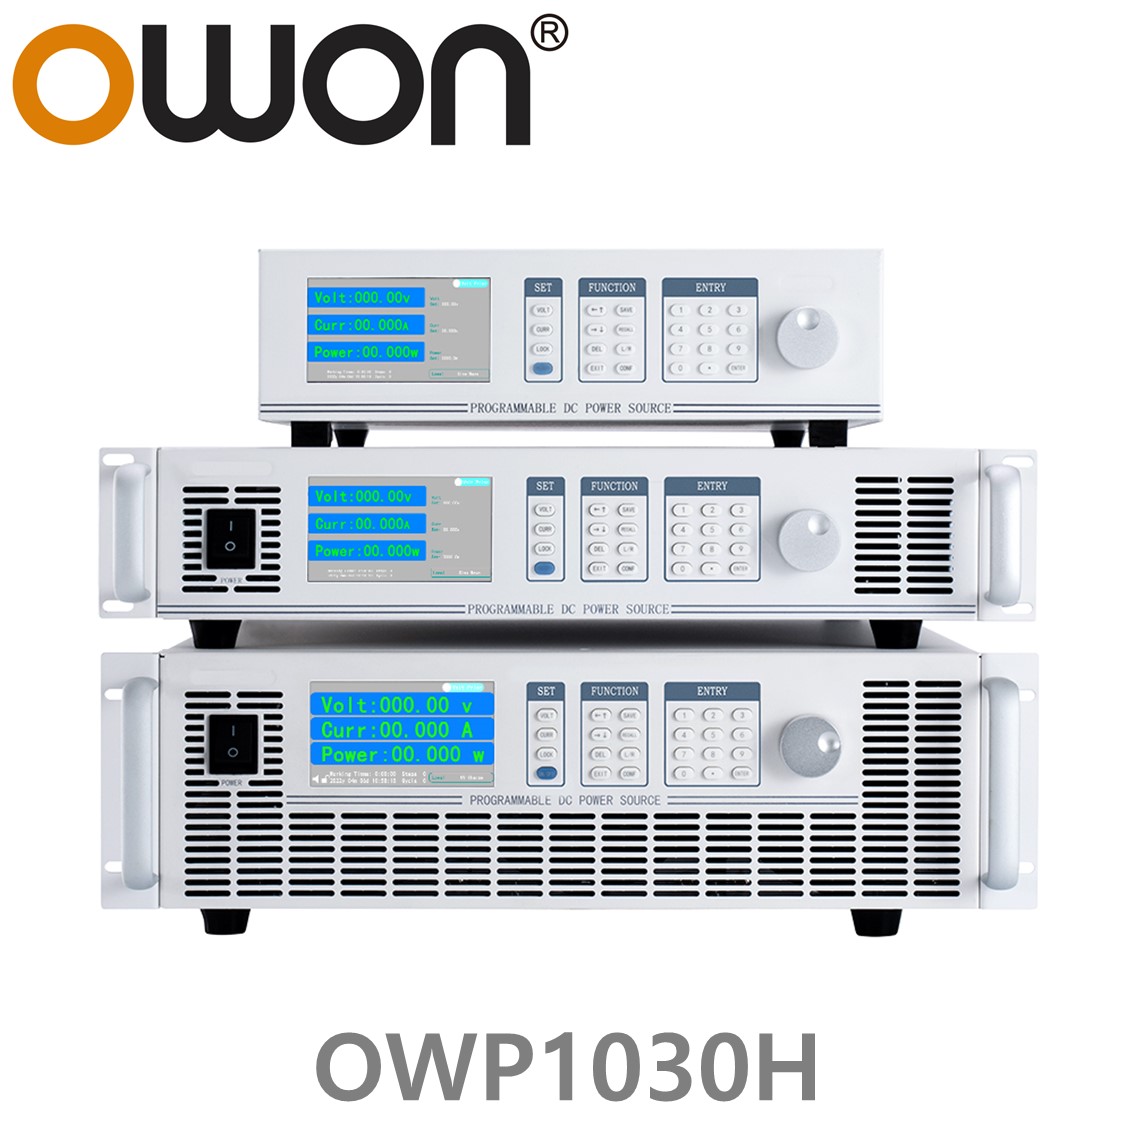 [ OWON ] OWP1030H 고전력 DC파워서플라이, 0-300.00V / 0-5.0000A / 1000.0W DC전원공급장치